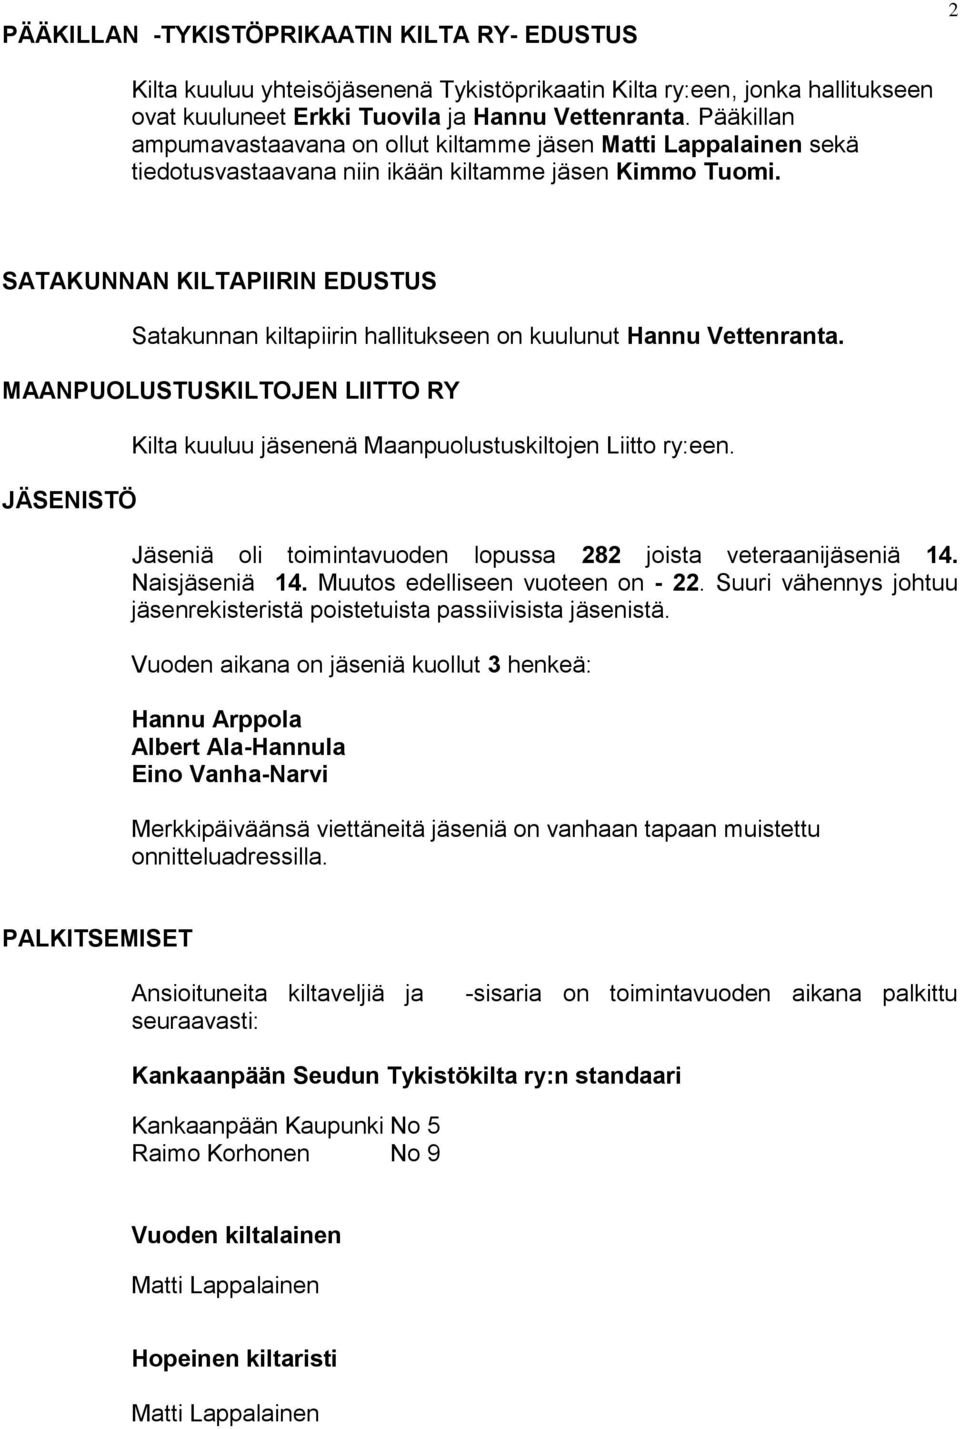 SATAKUNNAN KILTAPIIRIN EDUSTUS Satakunnan kiltapiirin hallitukseen on kuulunut Hannu Vettenranta. MAANPUOLUSTUSKILTOJEN LIITTO RY JÄSENISTÖ Kilta kuuluu jäsenenä Maanpuolustuskiltojen Liitto ry:een.